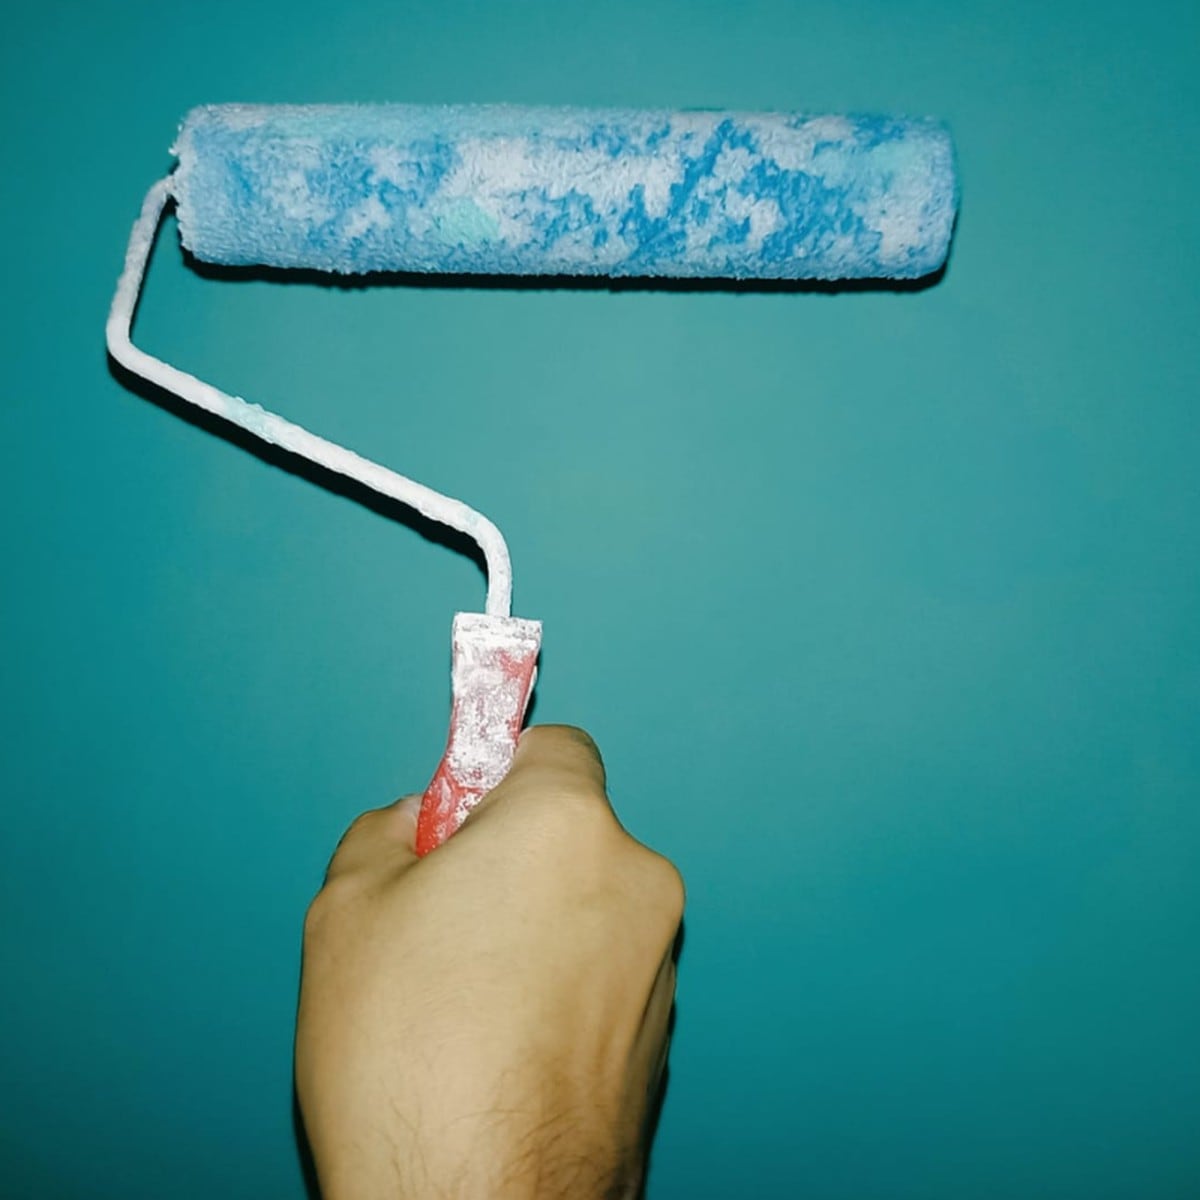 Cómo pintar paredes lisas con rodillo sin dejar marcas, Trucos caseros, RESPUESTAS